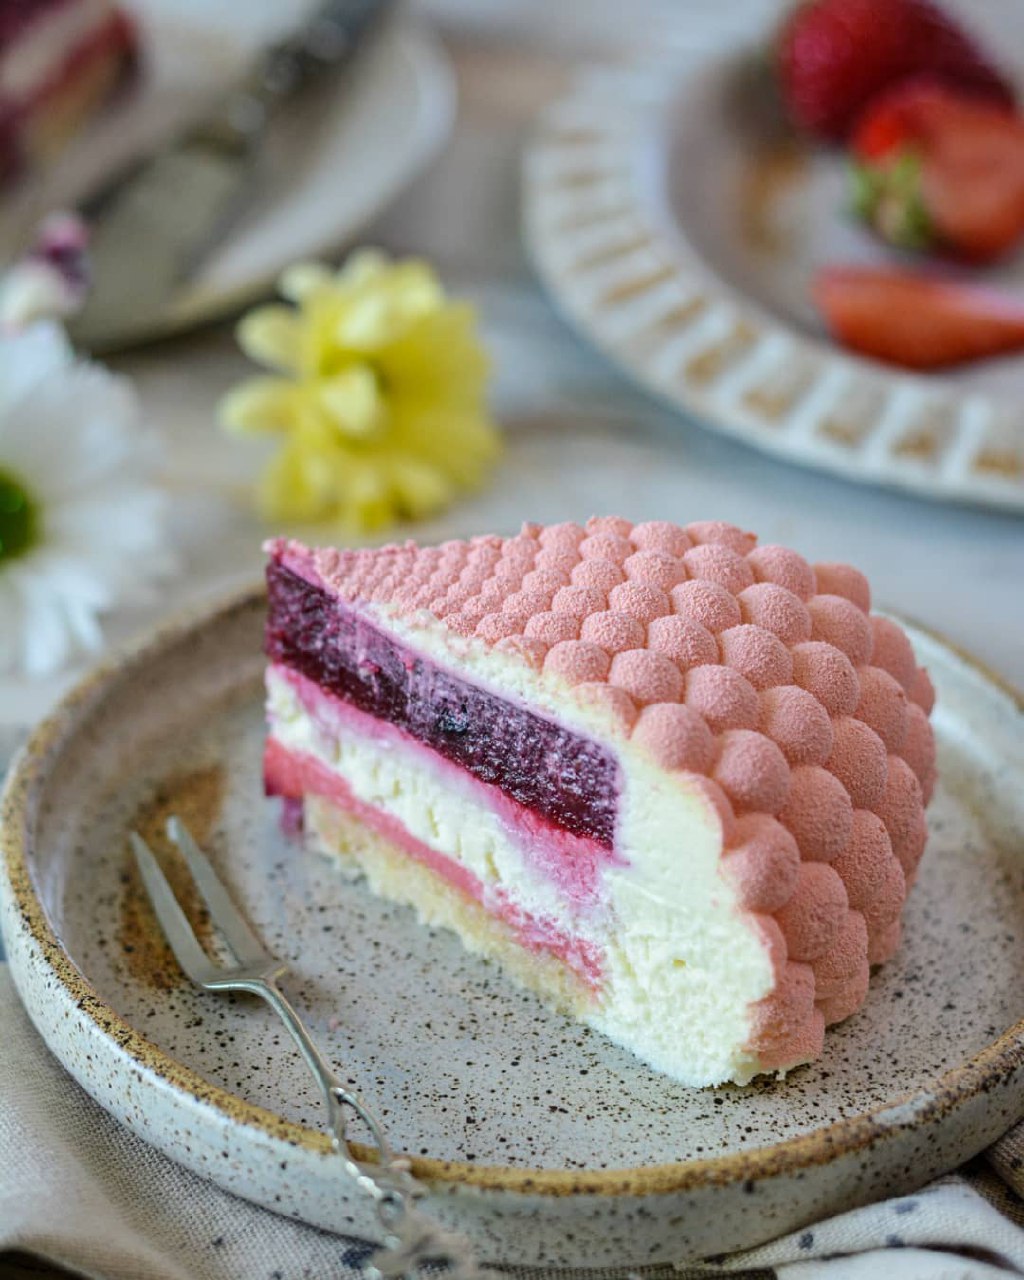 Это не совсем обычный бисквит! Спонж-кейк представляет собой очень порист | Instagram